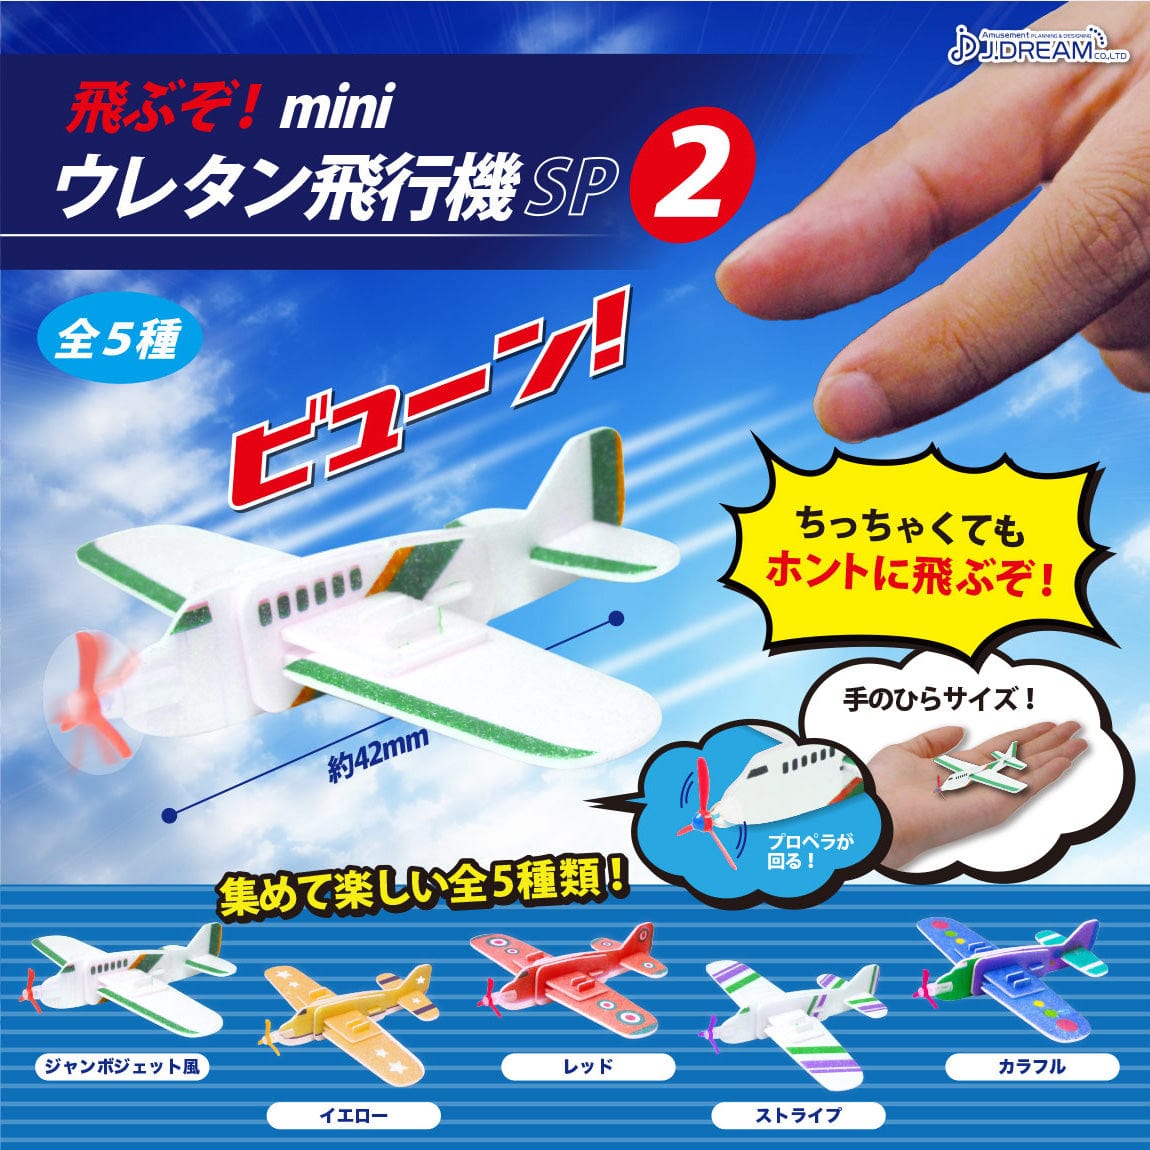 JDream CP0125 - Tobuzo Mini Uretan Airplane SP 2 - Complete Set